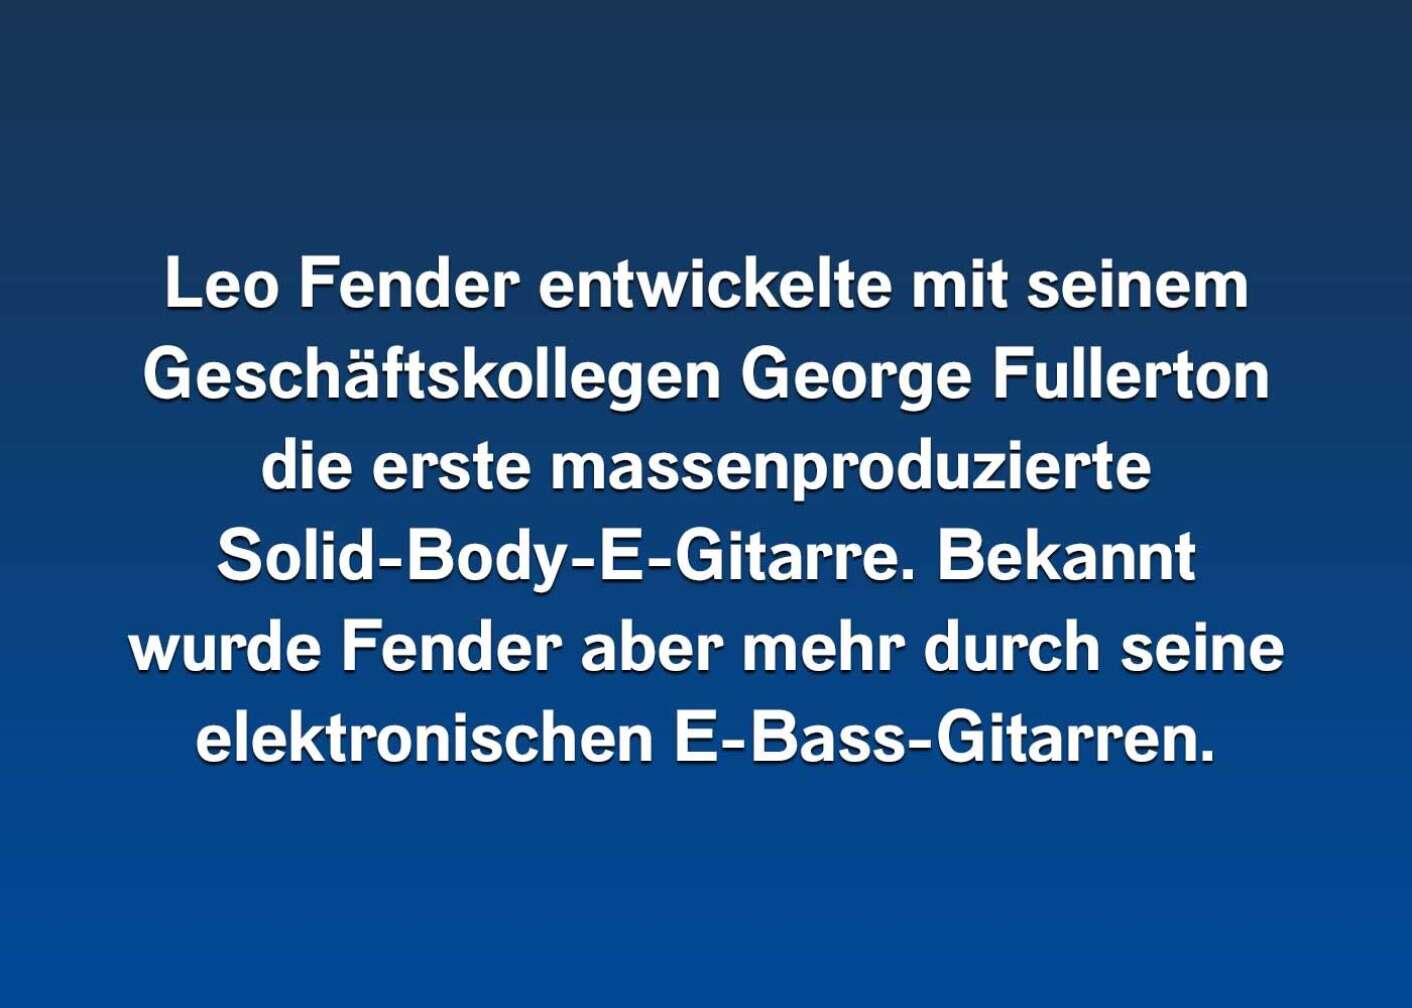 10 Fakten über Leo Fender